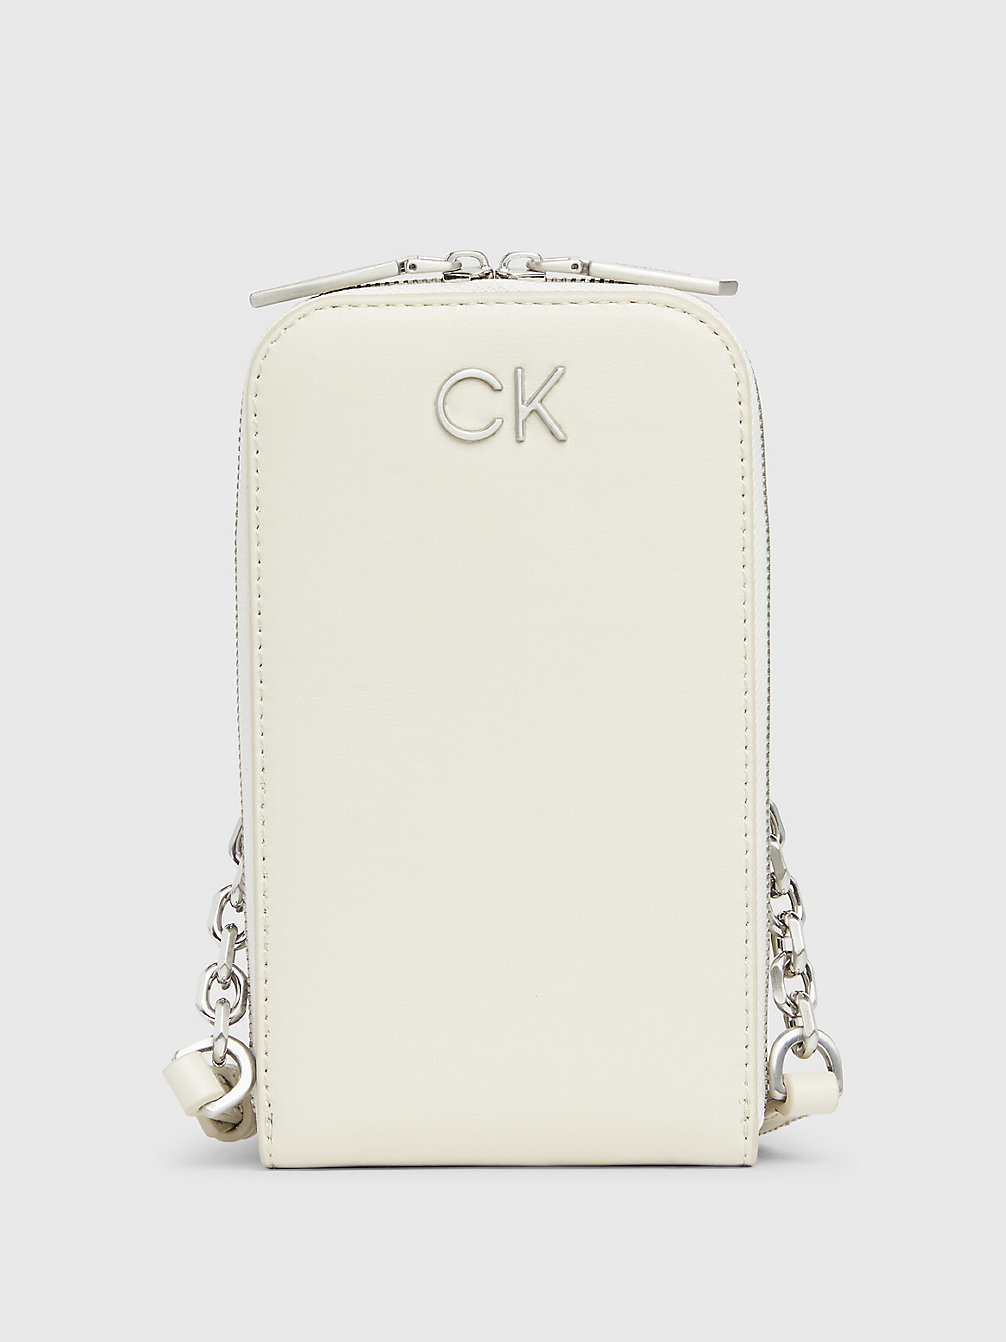 DK ECRU Crossbody Phone Bag undefined women Calvin Klein